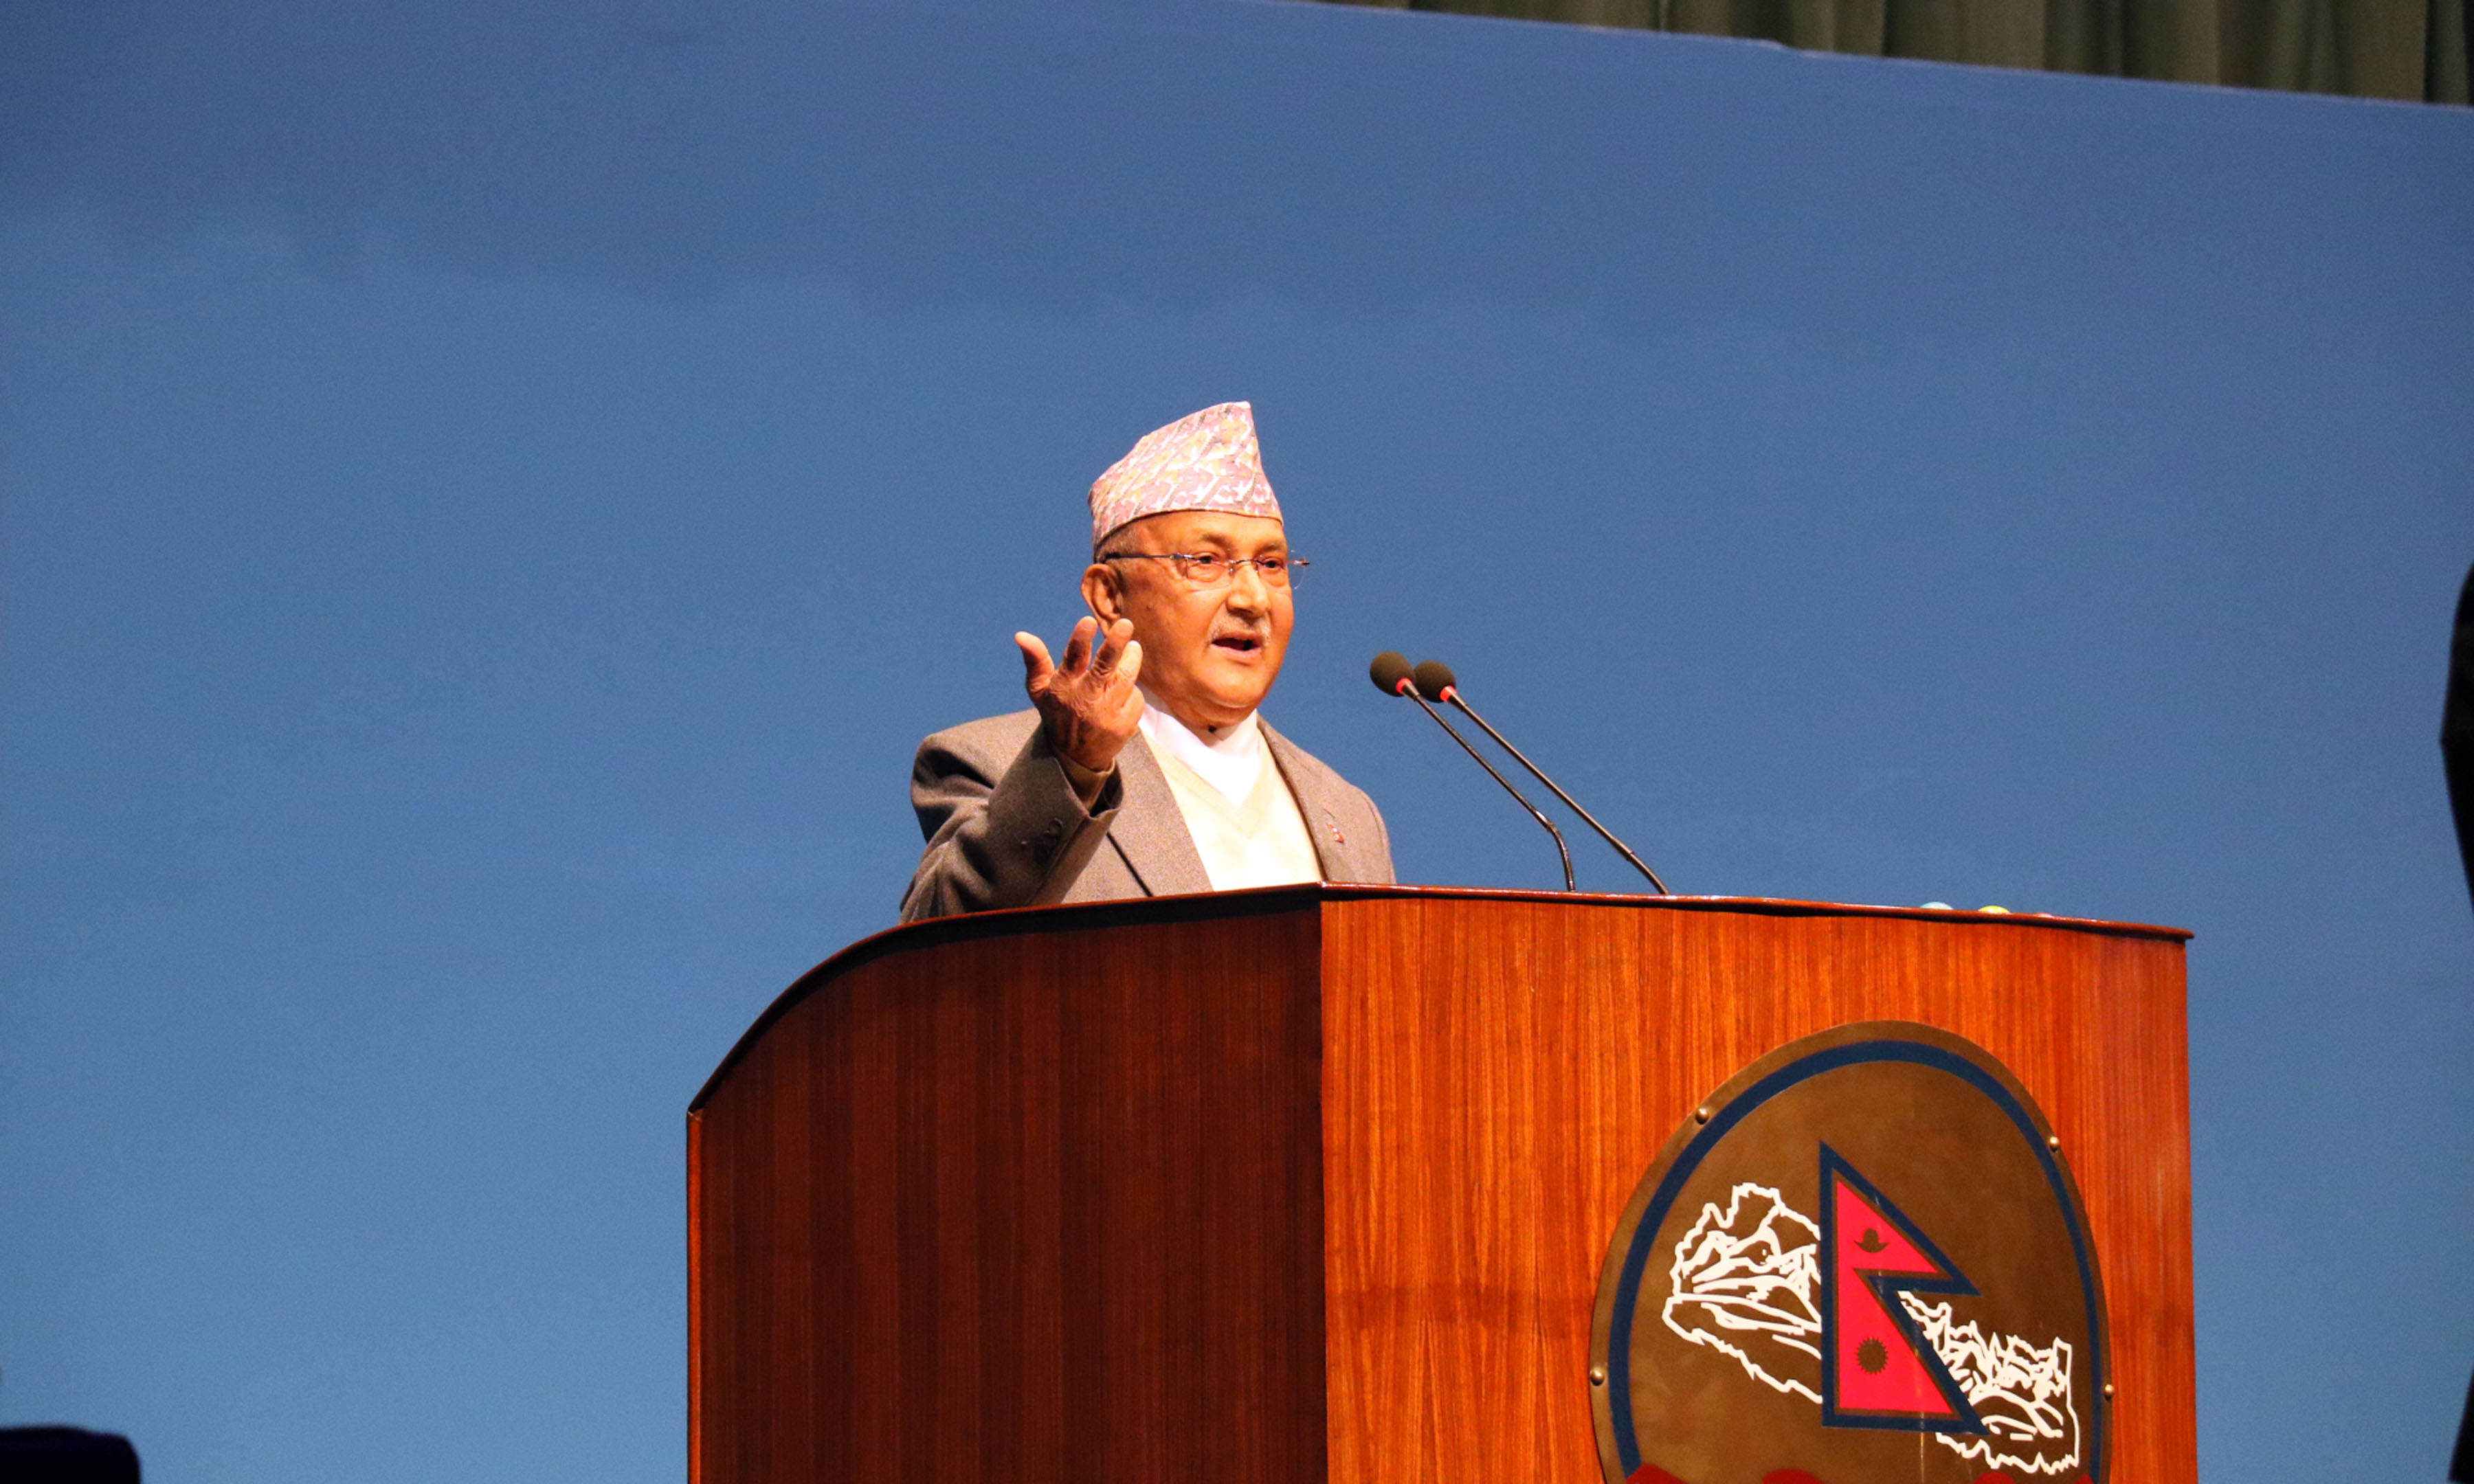 सरकारले कुनै ‘राष्ट्रघात’ गरेको छैन, मोदीको नेपाल भ्रमण उपलब्धिपूर्णः प्रधानमन्त्री